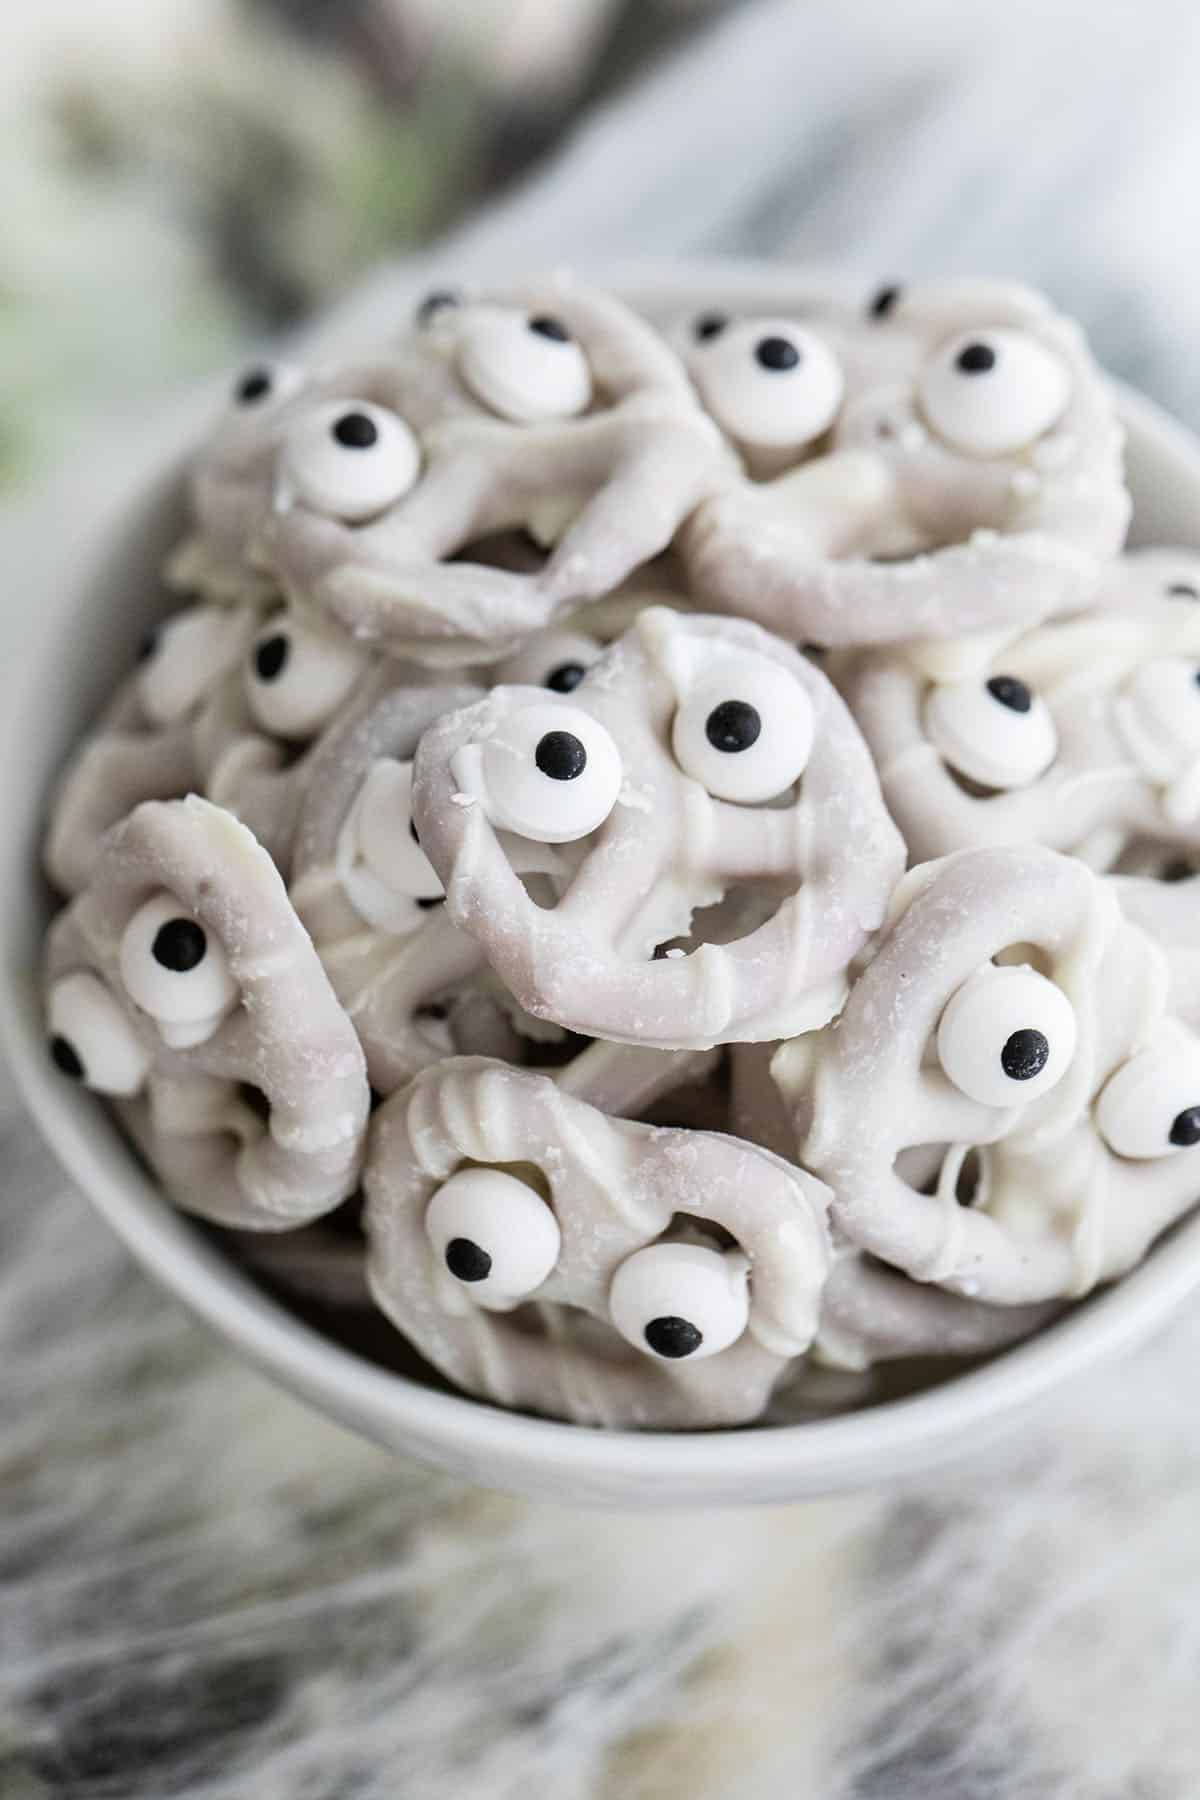 Mini yogurt pretzels with eyes.